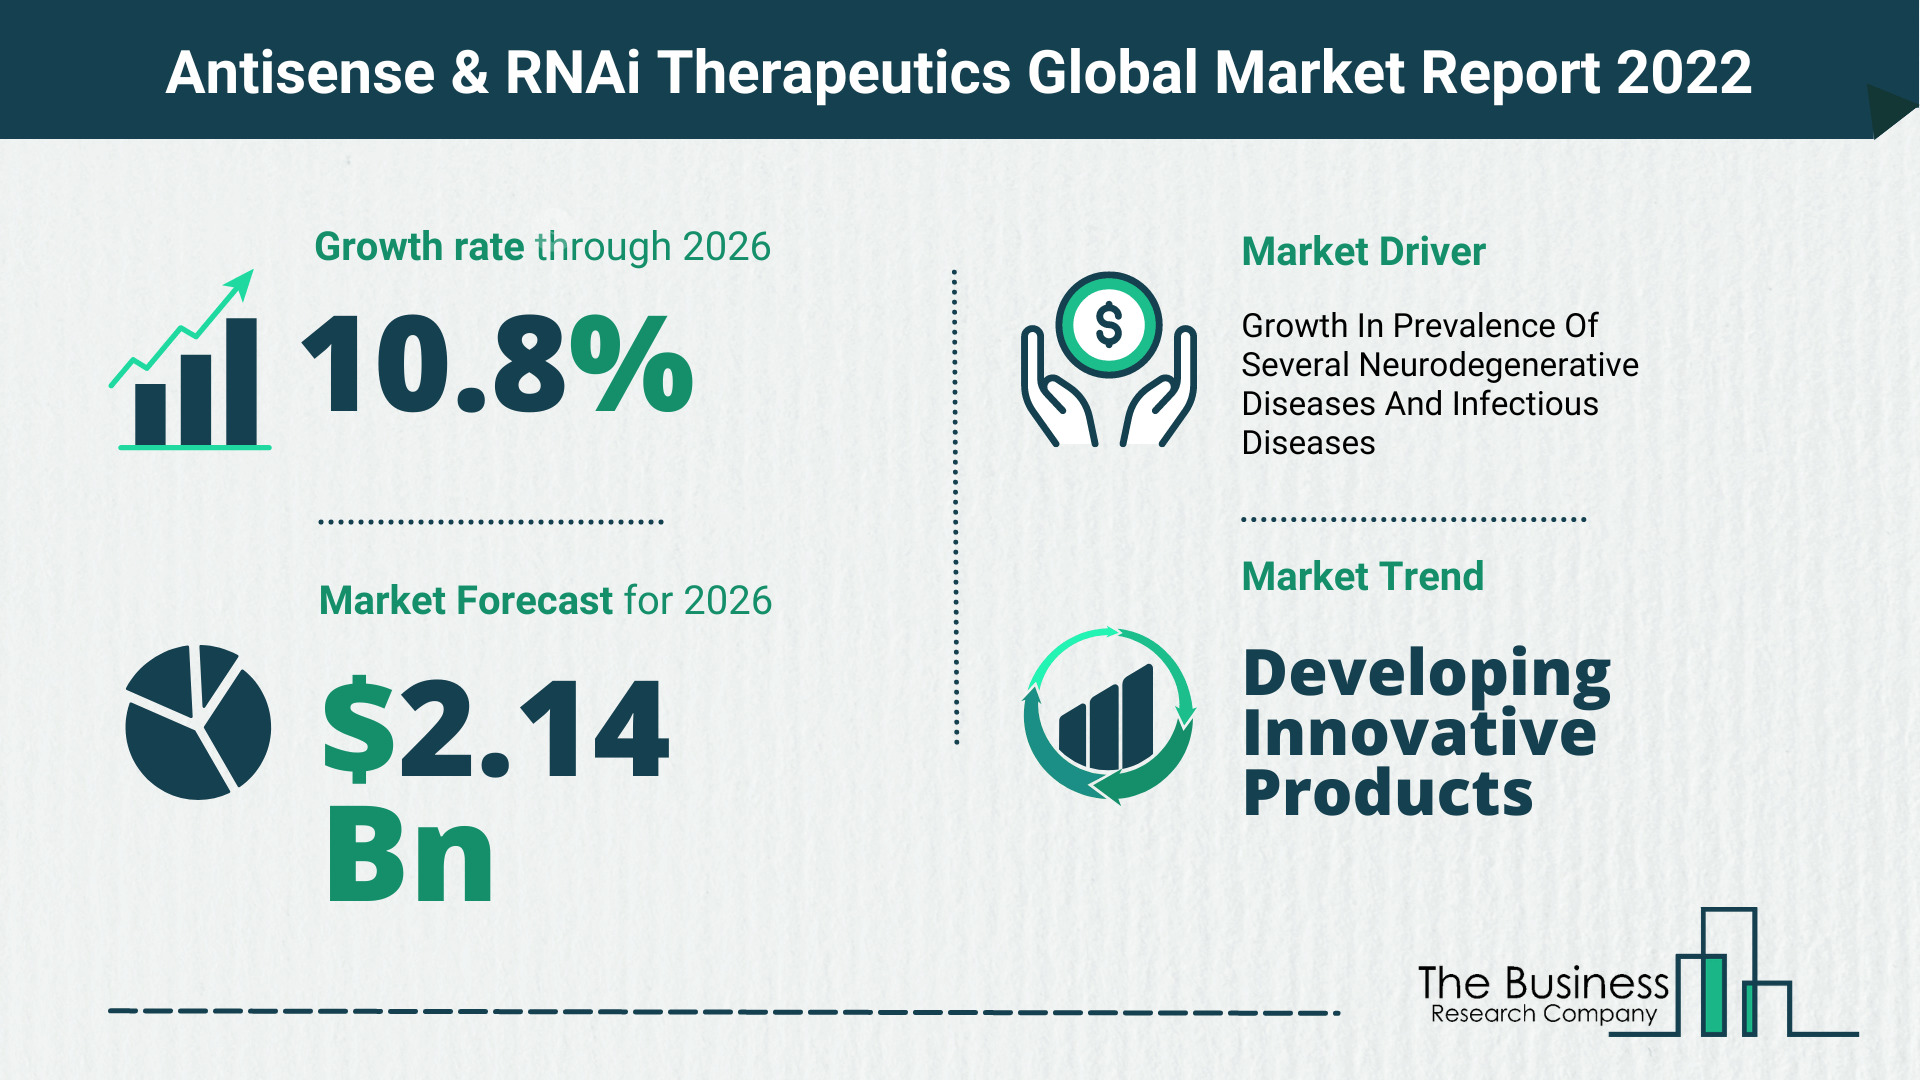 Global Antisense & RNAi Therapeutics Market